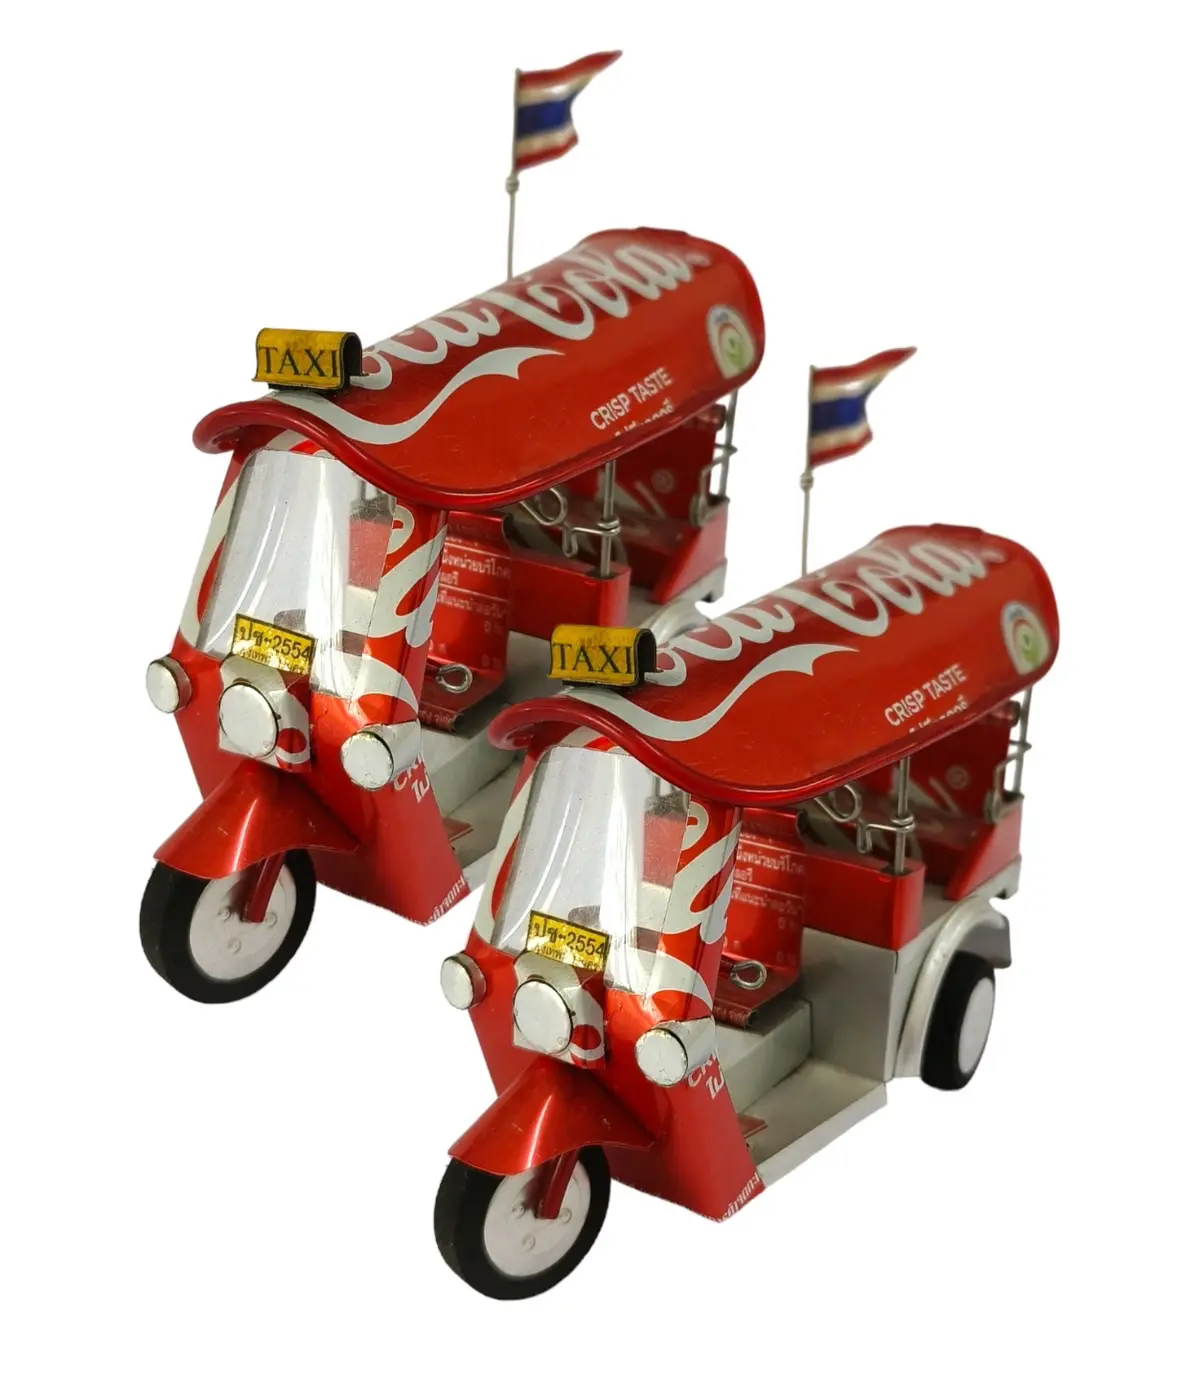 Produto mais vendido da Tailândia, modelo de Tuk Tuk Tailandês, latas de Coca-Cola, presente colecionável artesanal para lembrancinhas de amigos